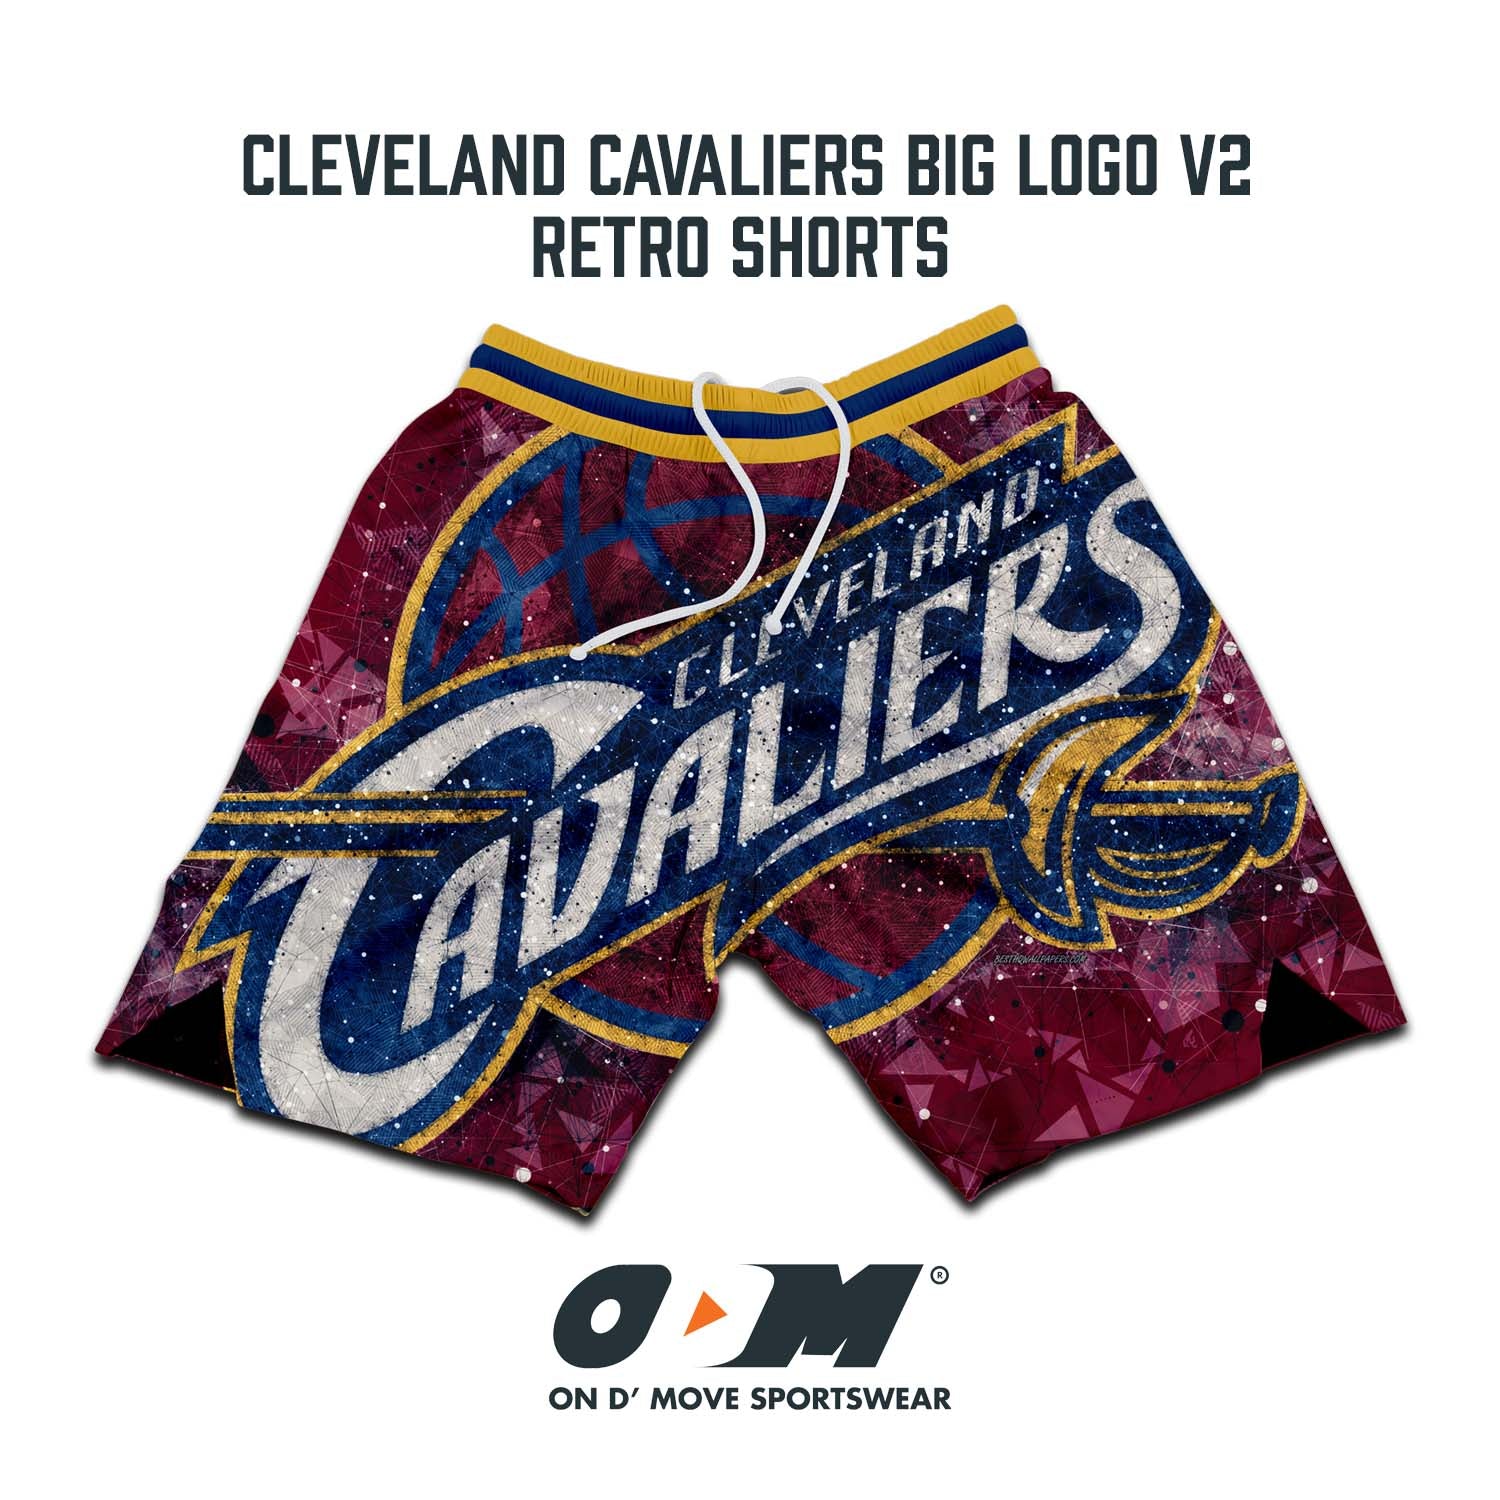 Cleveland Cavaliers Big Logo v2 Retro Shorts